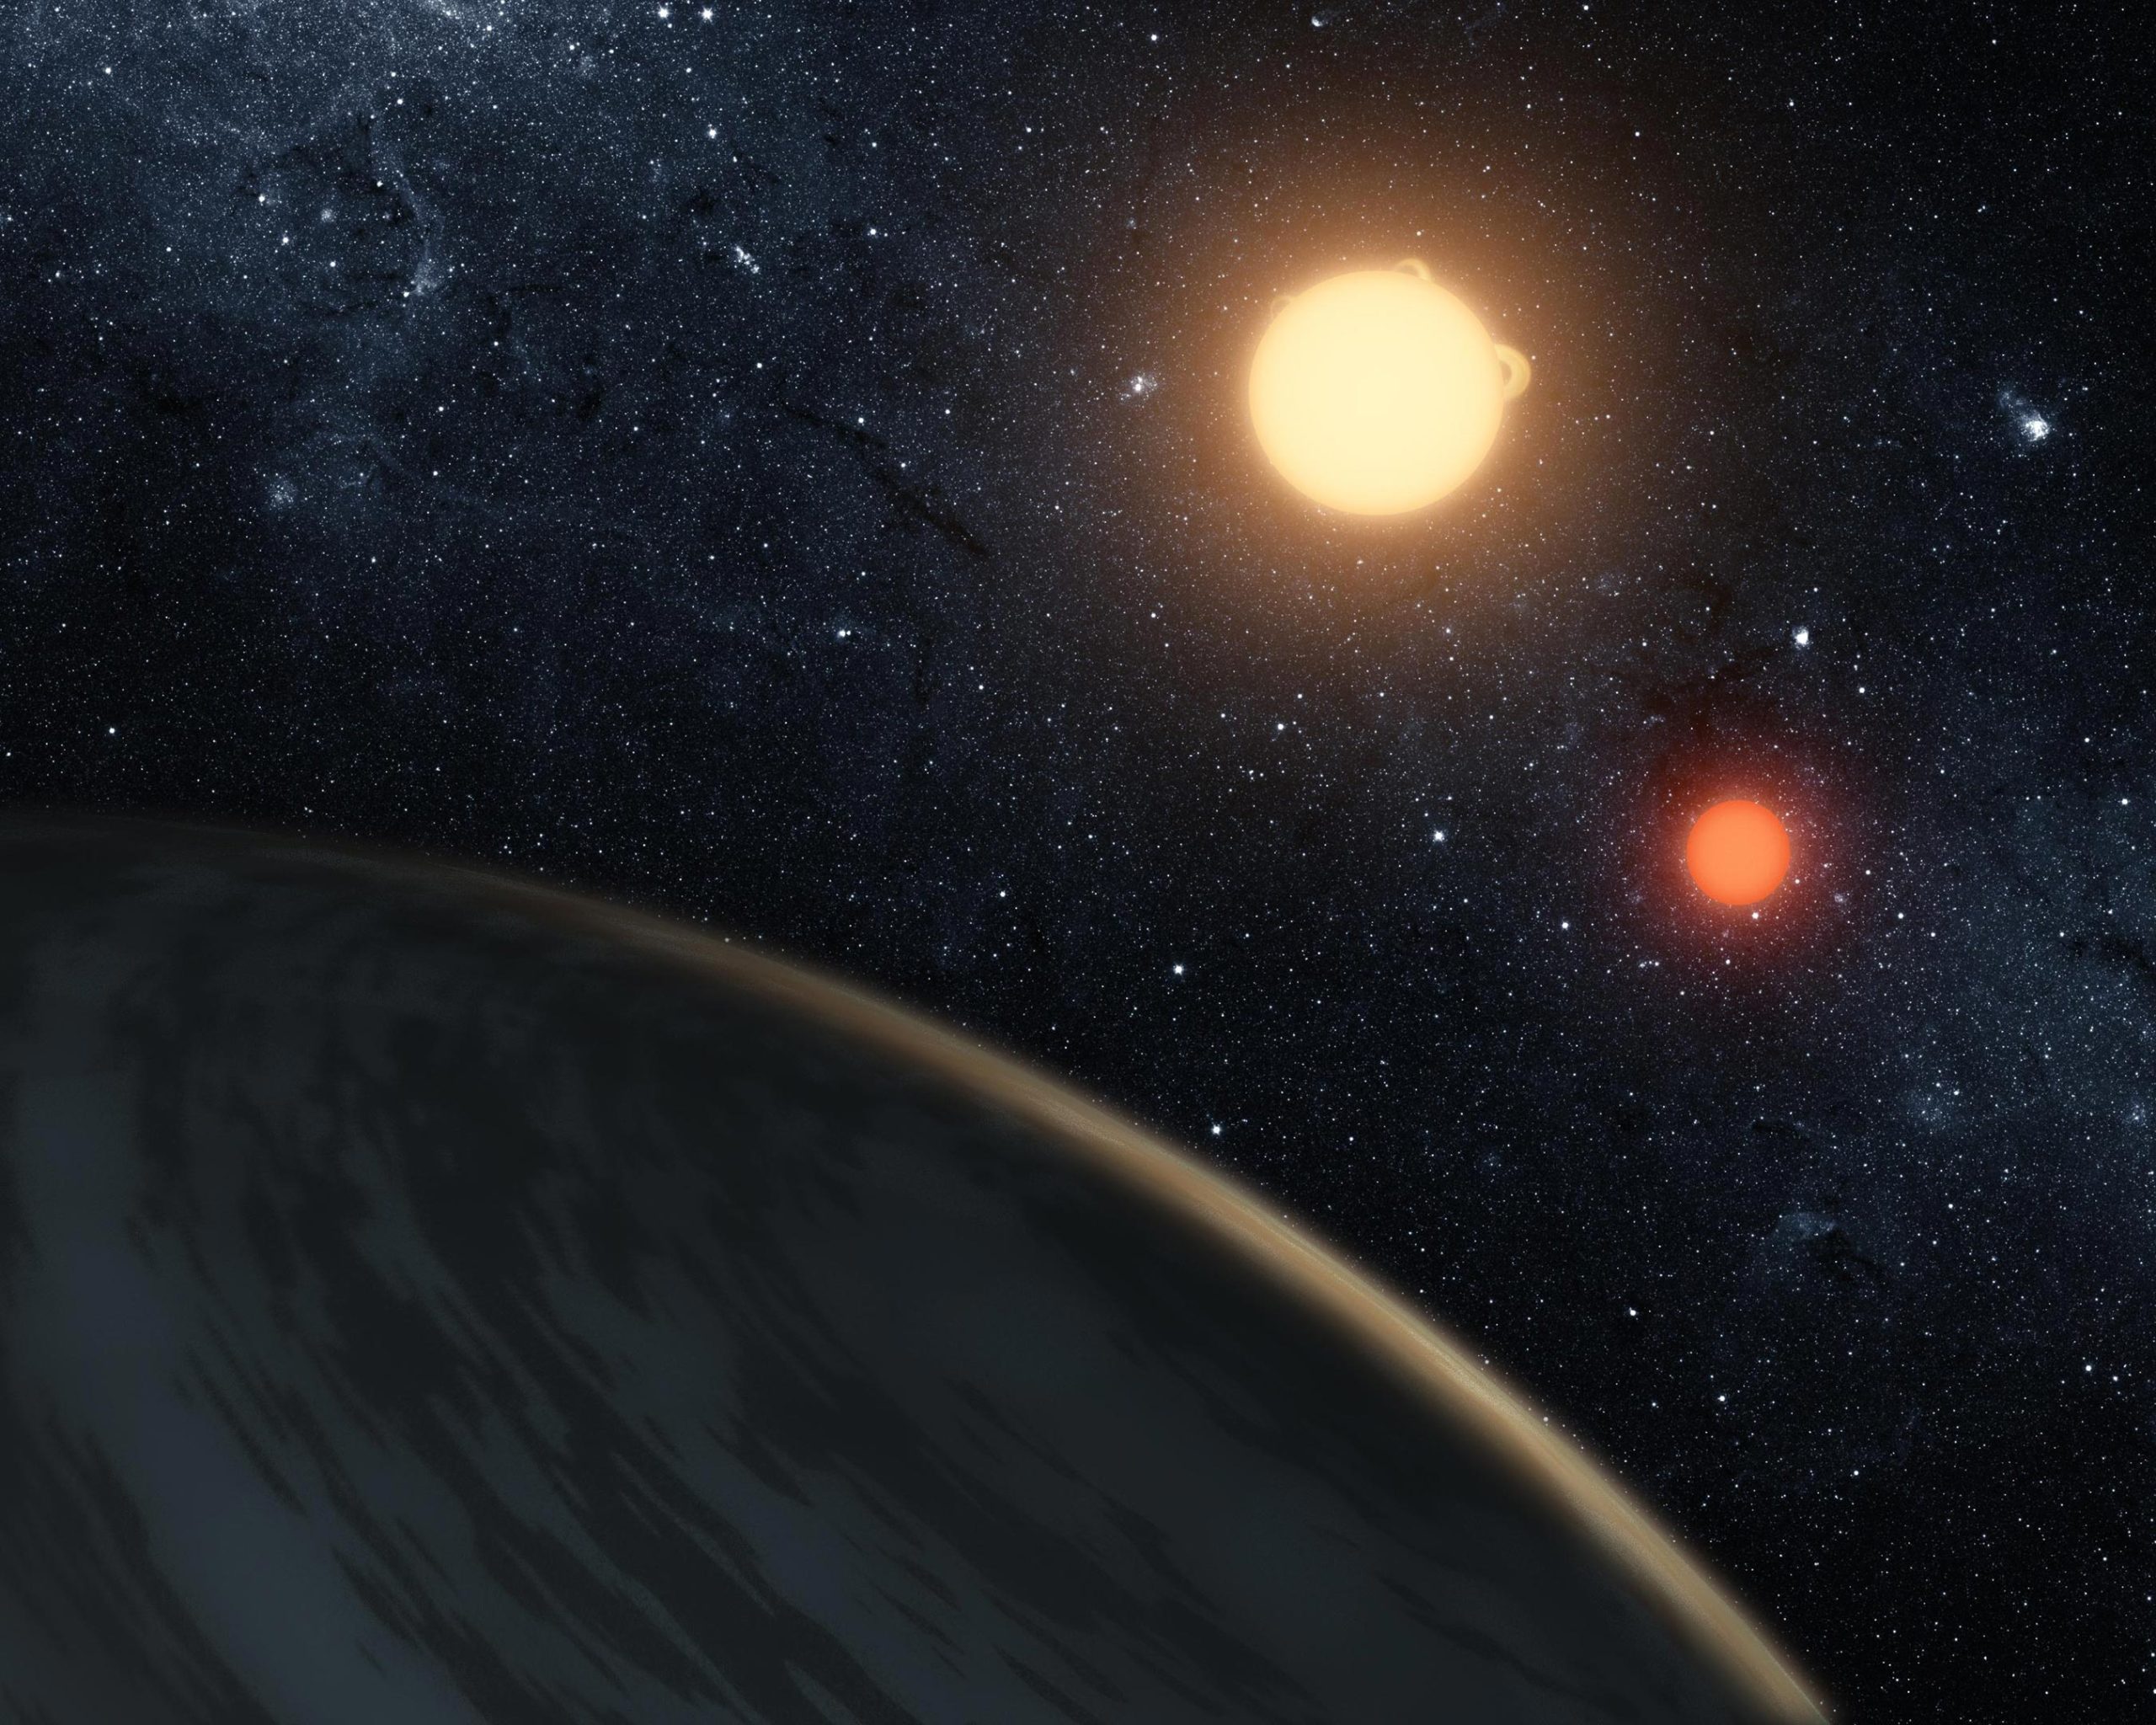 系外行星开普勒-16b有两个太阳 就像《星球大战》中的